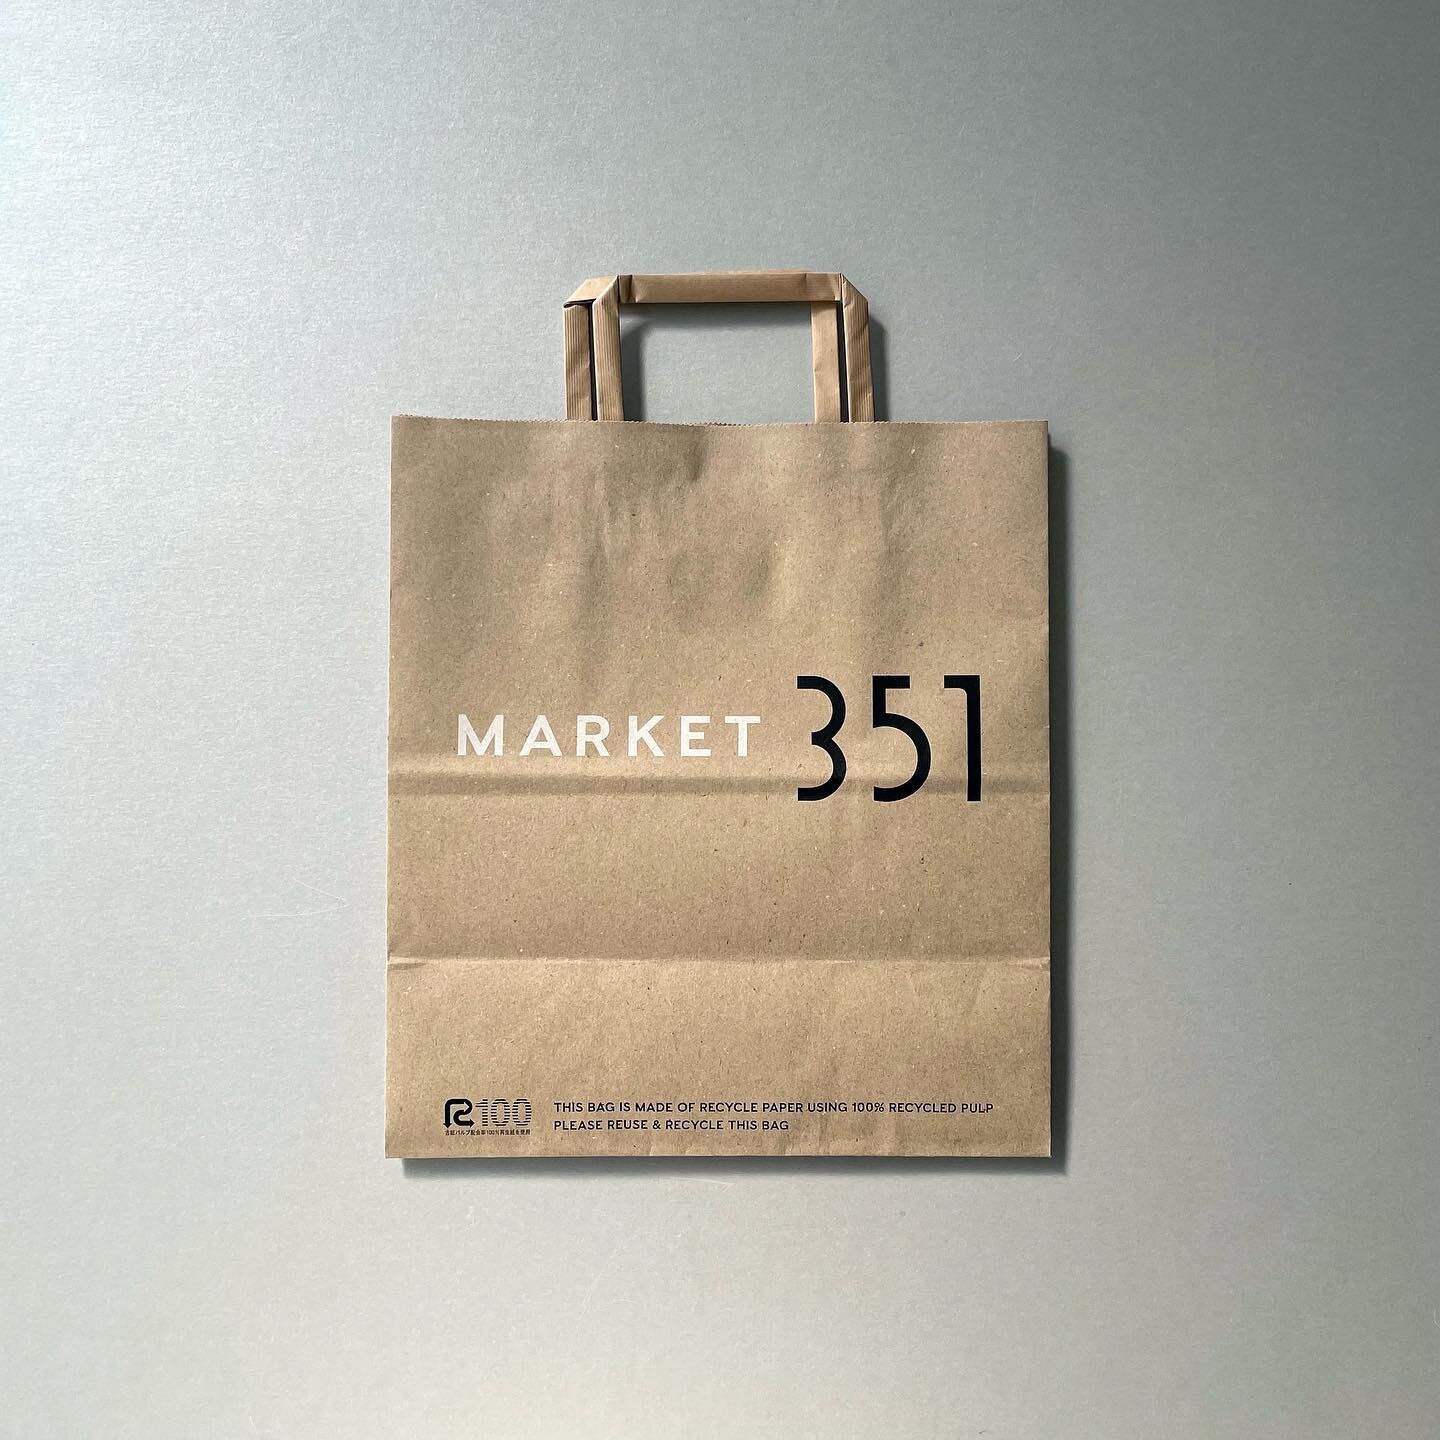 MARKET351の紙袋。
地球環境へ配慮し、リサイクル材などをミックスしたFSC認証（森林認証）の紙を使用しています。
印刷のインクには、植物由来のバイオマス原料を用いた再生可能なバイオマスインキを使用。
⁡
#market351 
#paperbags 
#graphicdesign 
#clakdesign